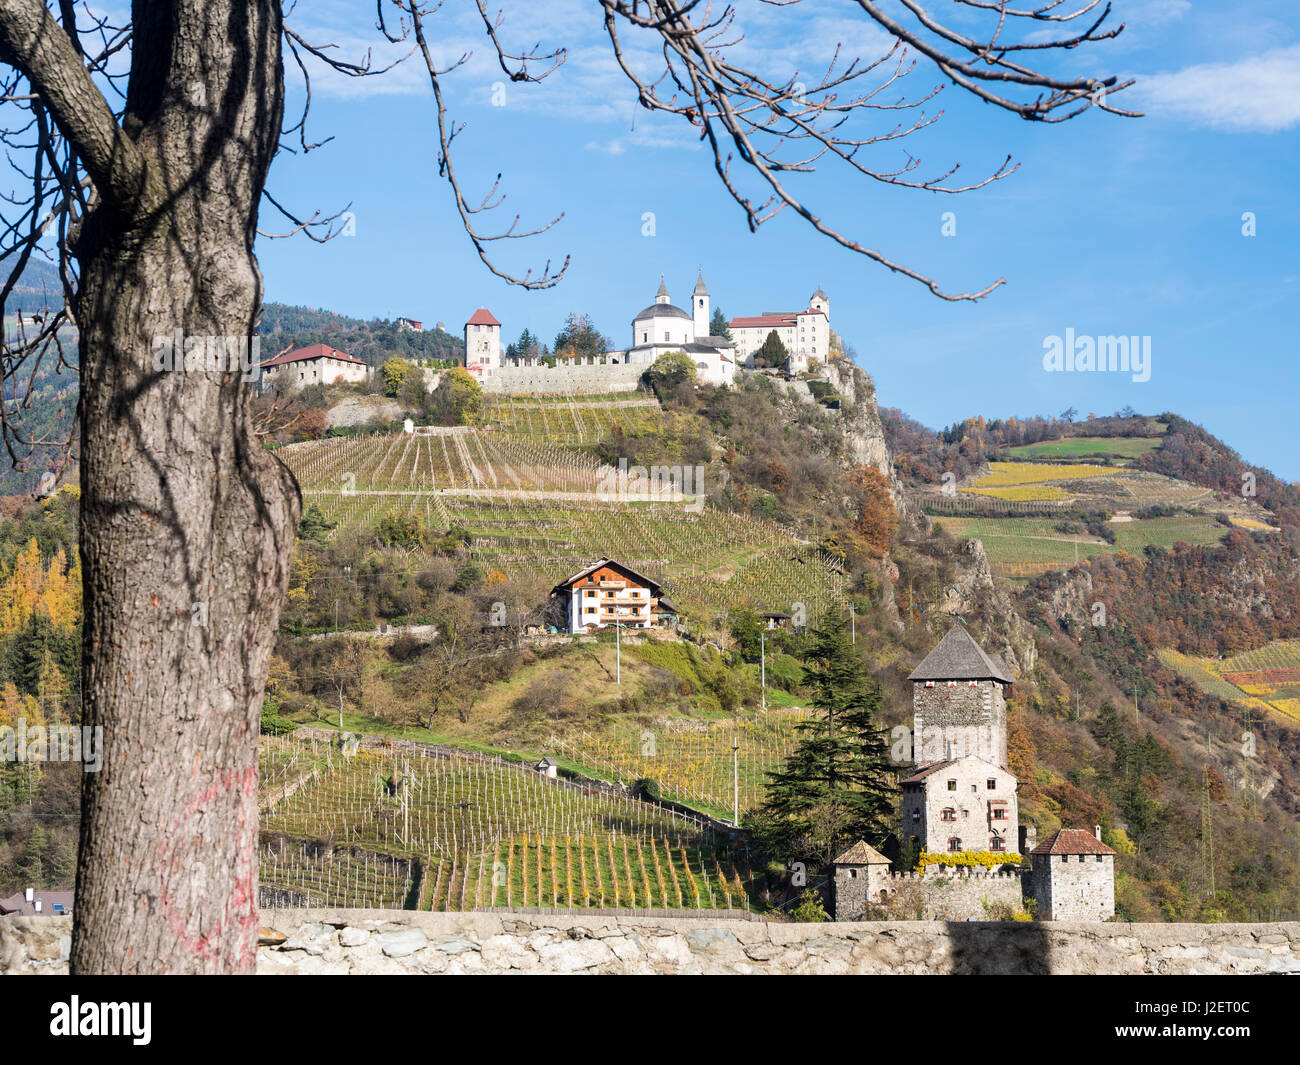 Saeben et monastère Branzoll Château près de Klausen dans la Valle Isarco au cours de l'automne. L'Europe centrale, le Tyrol du Sud, Italie (grand format formats disponibles) Banque D'Images